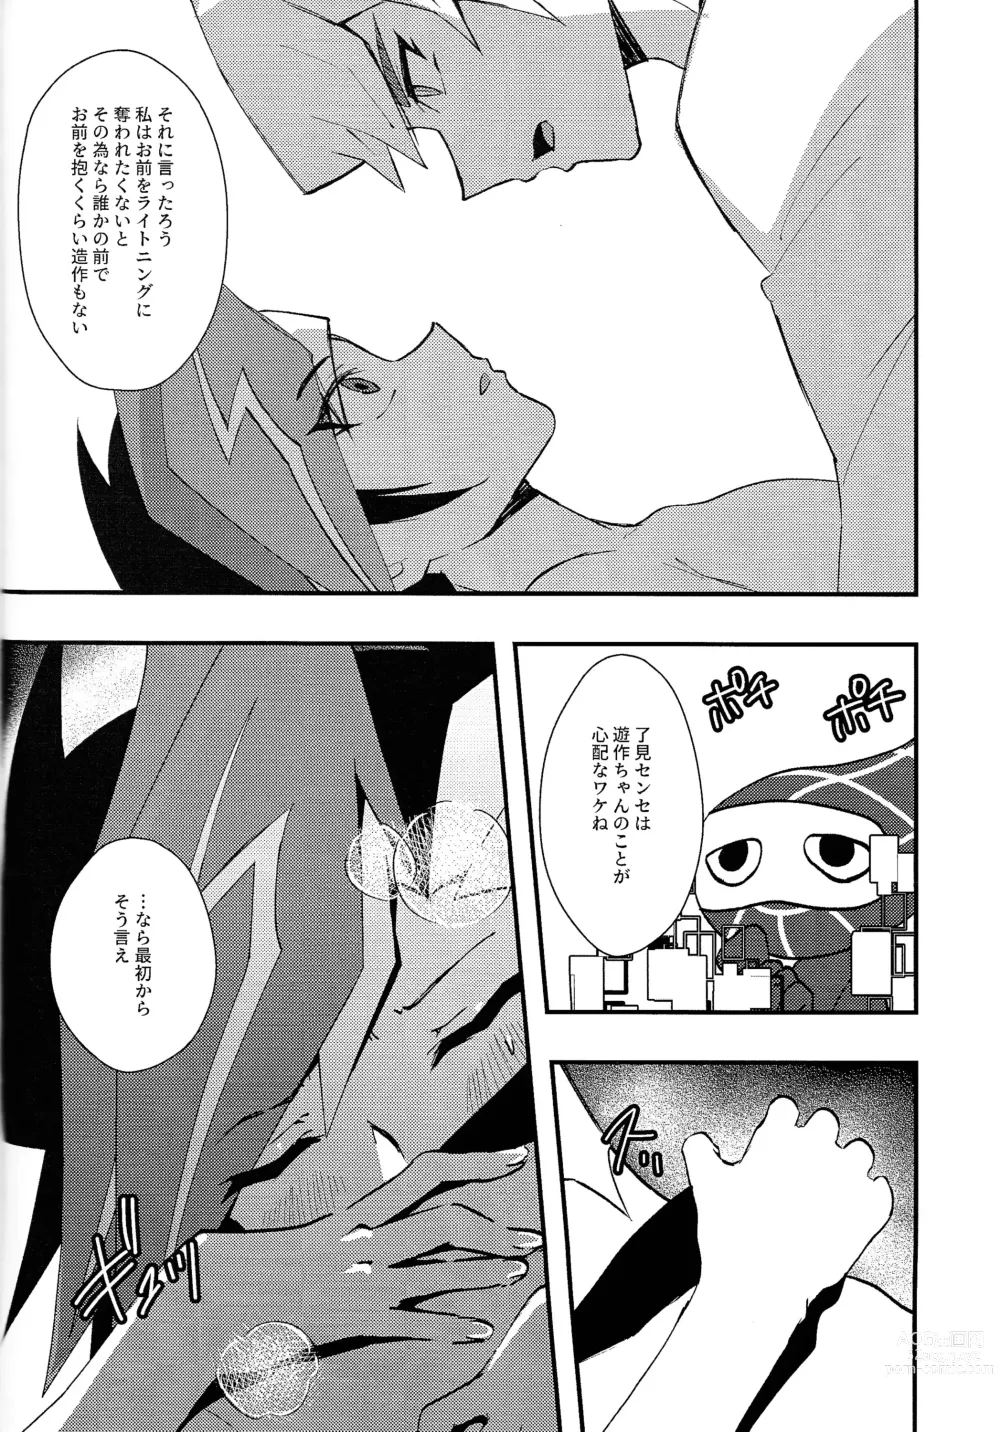 Page 15 of doujinshi Saisho kara ie!!